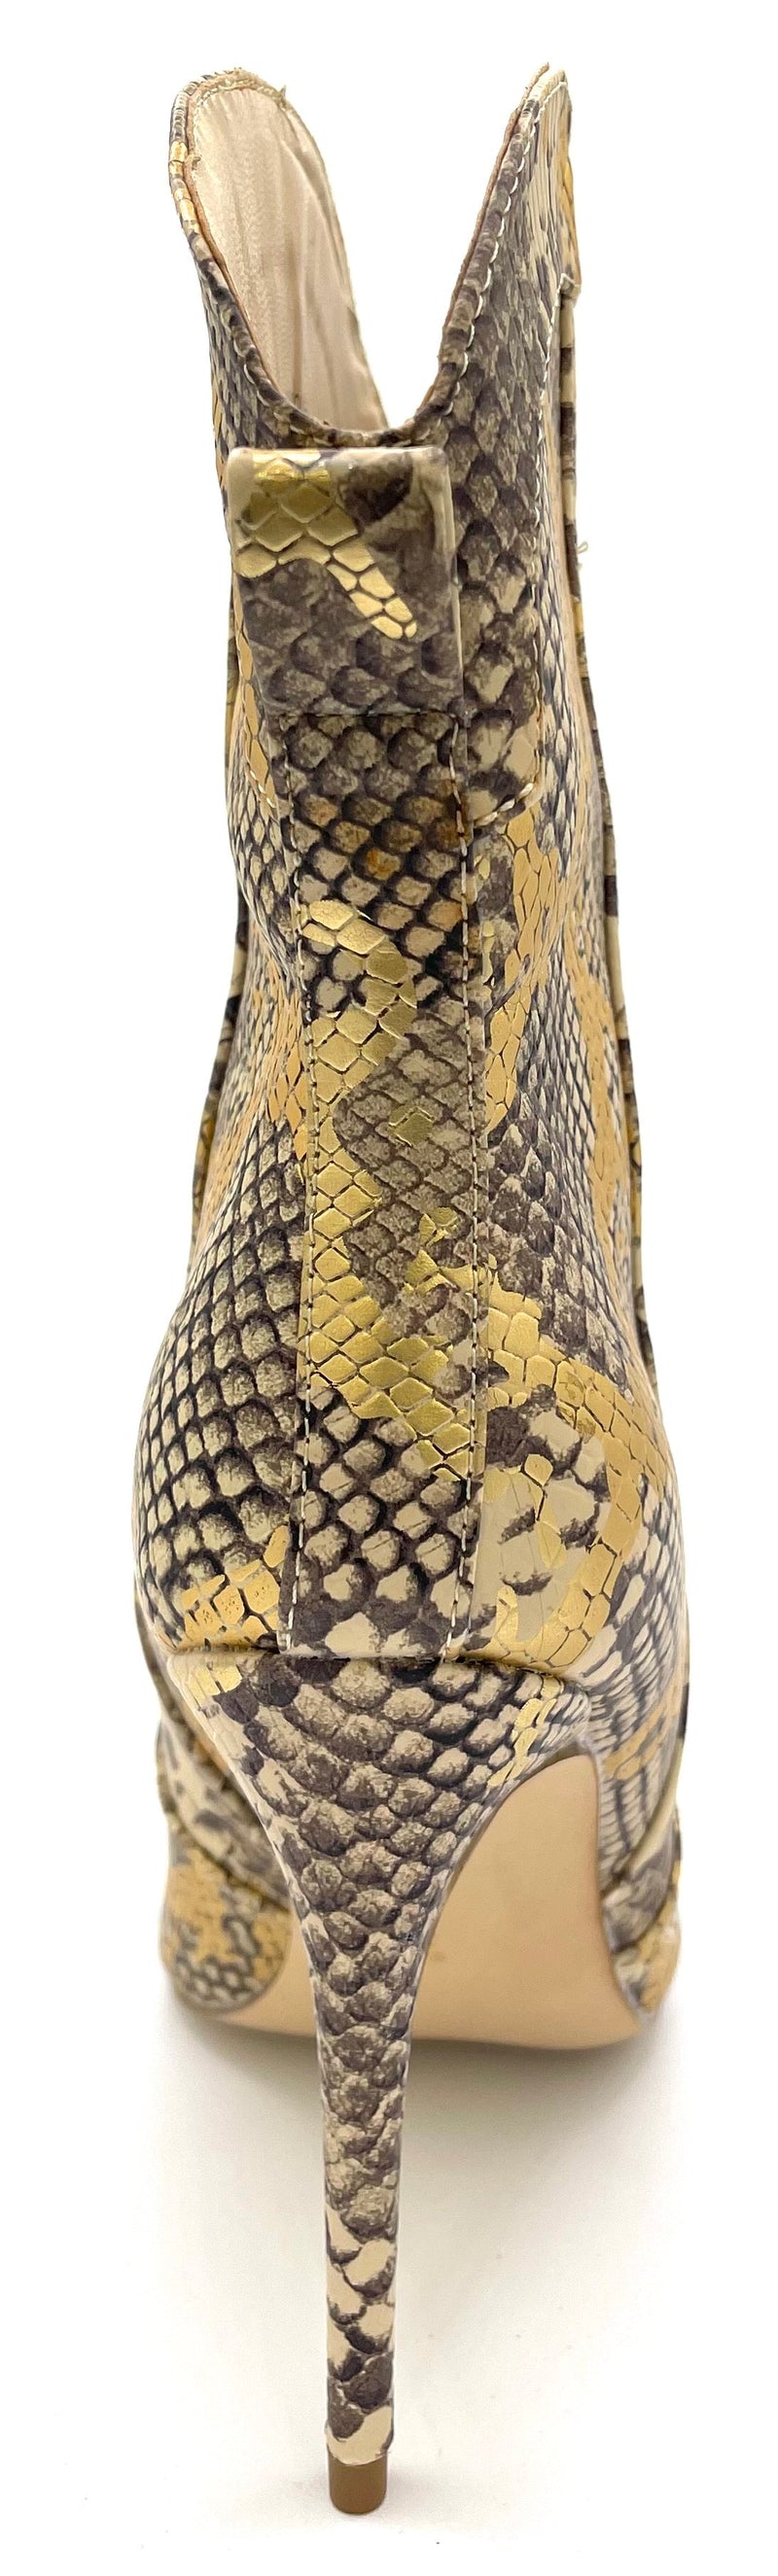 Botas de tacón alto con punta en pico para mujer, botines Hibiscus-47 de Anne Michelle 